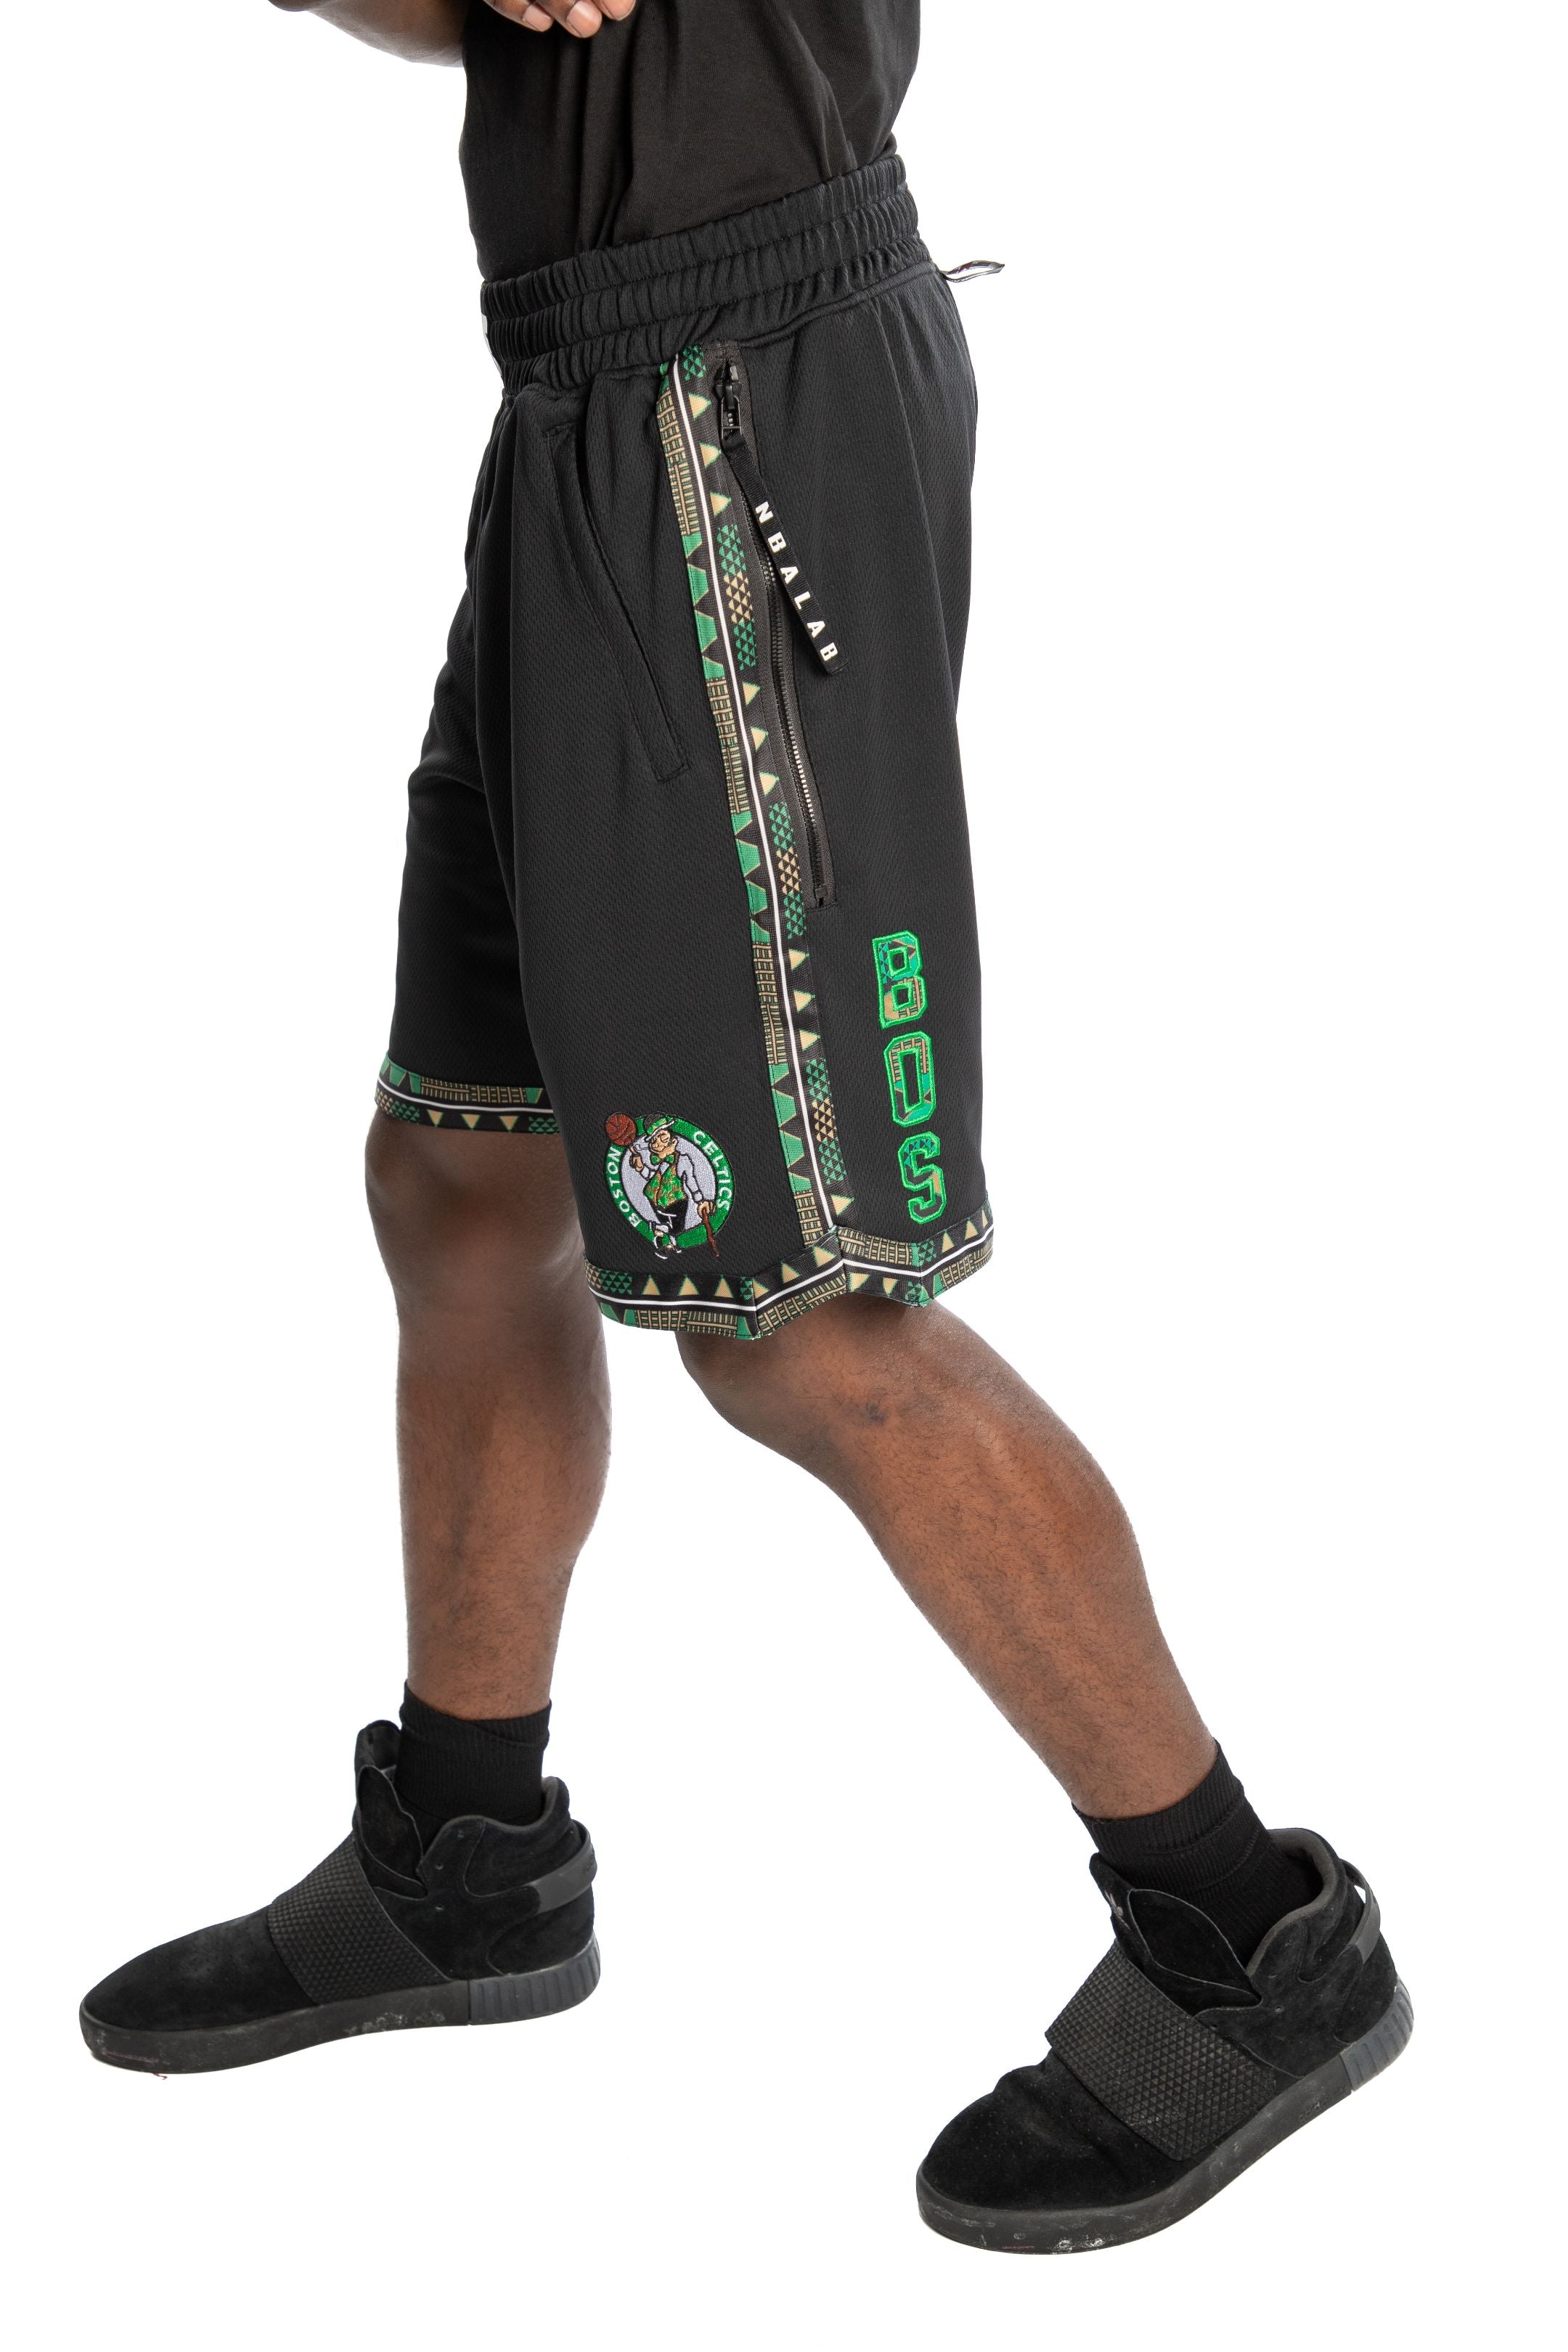 Circo Predecesor proteger Boston Celtics Kente Dunk Short Black | Two Hype